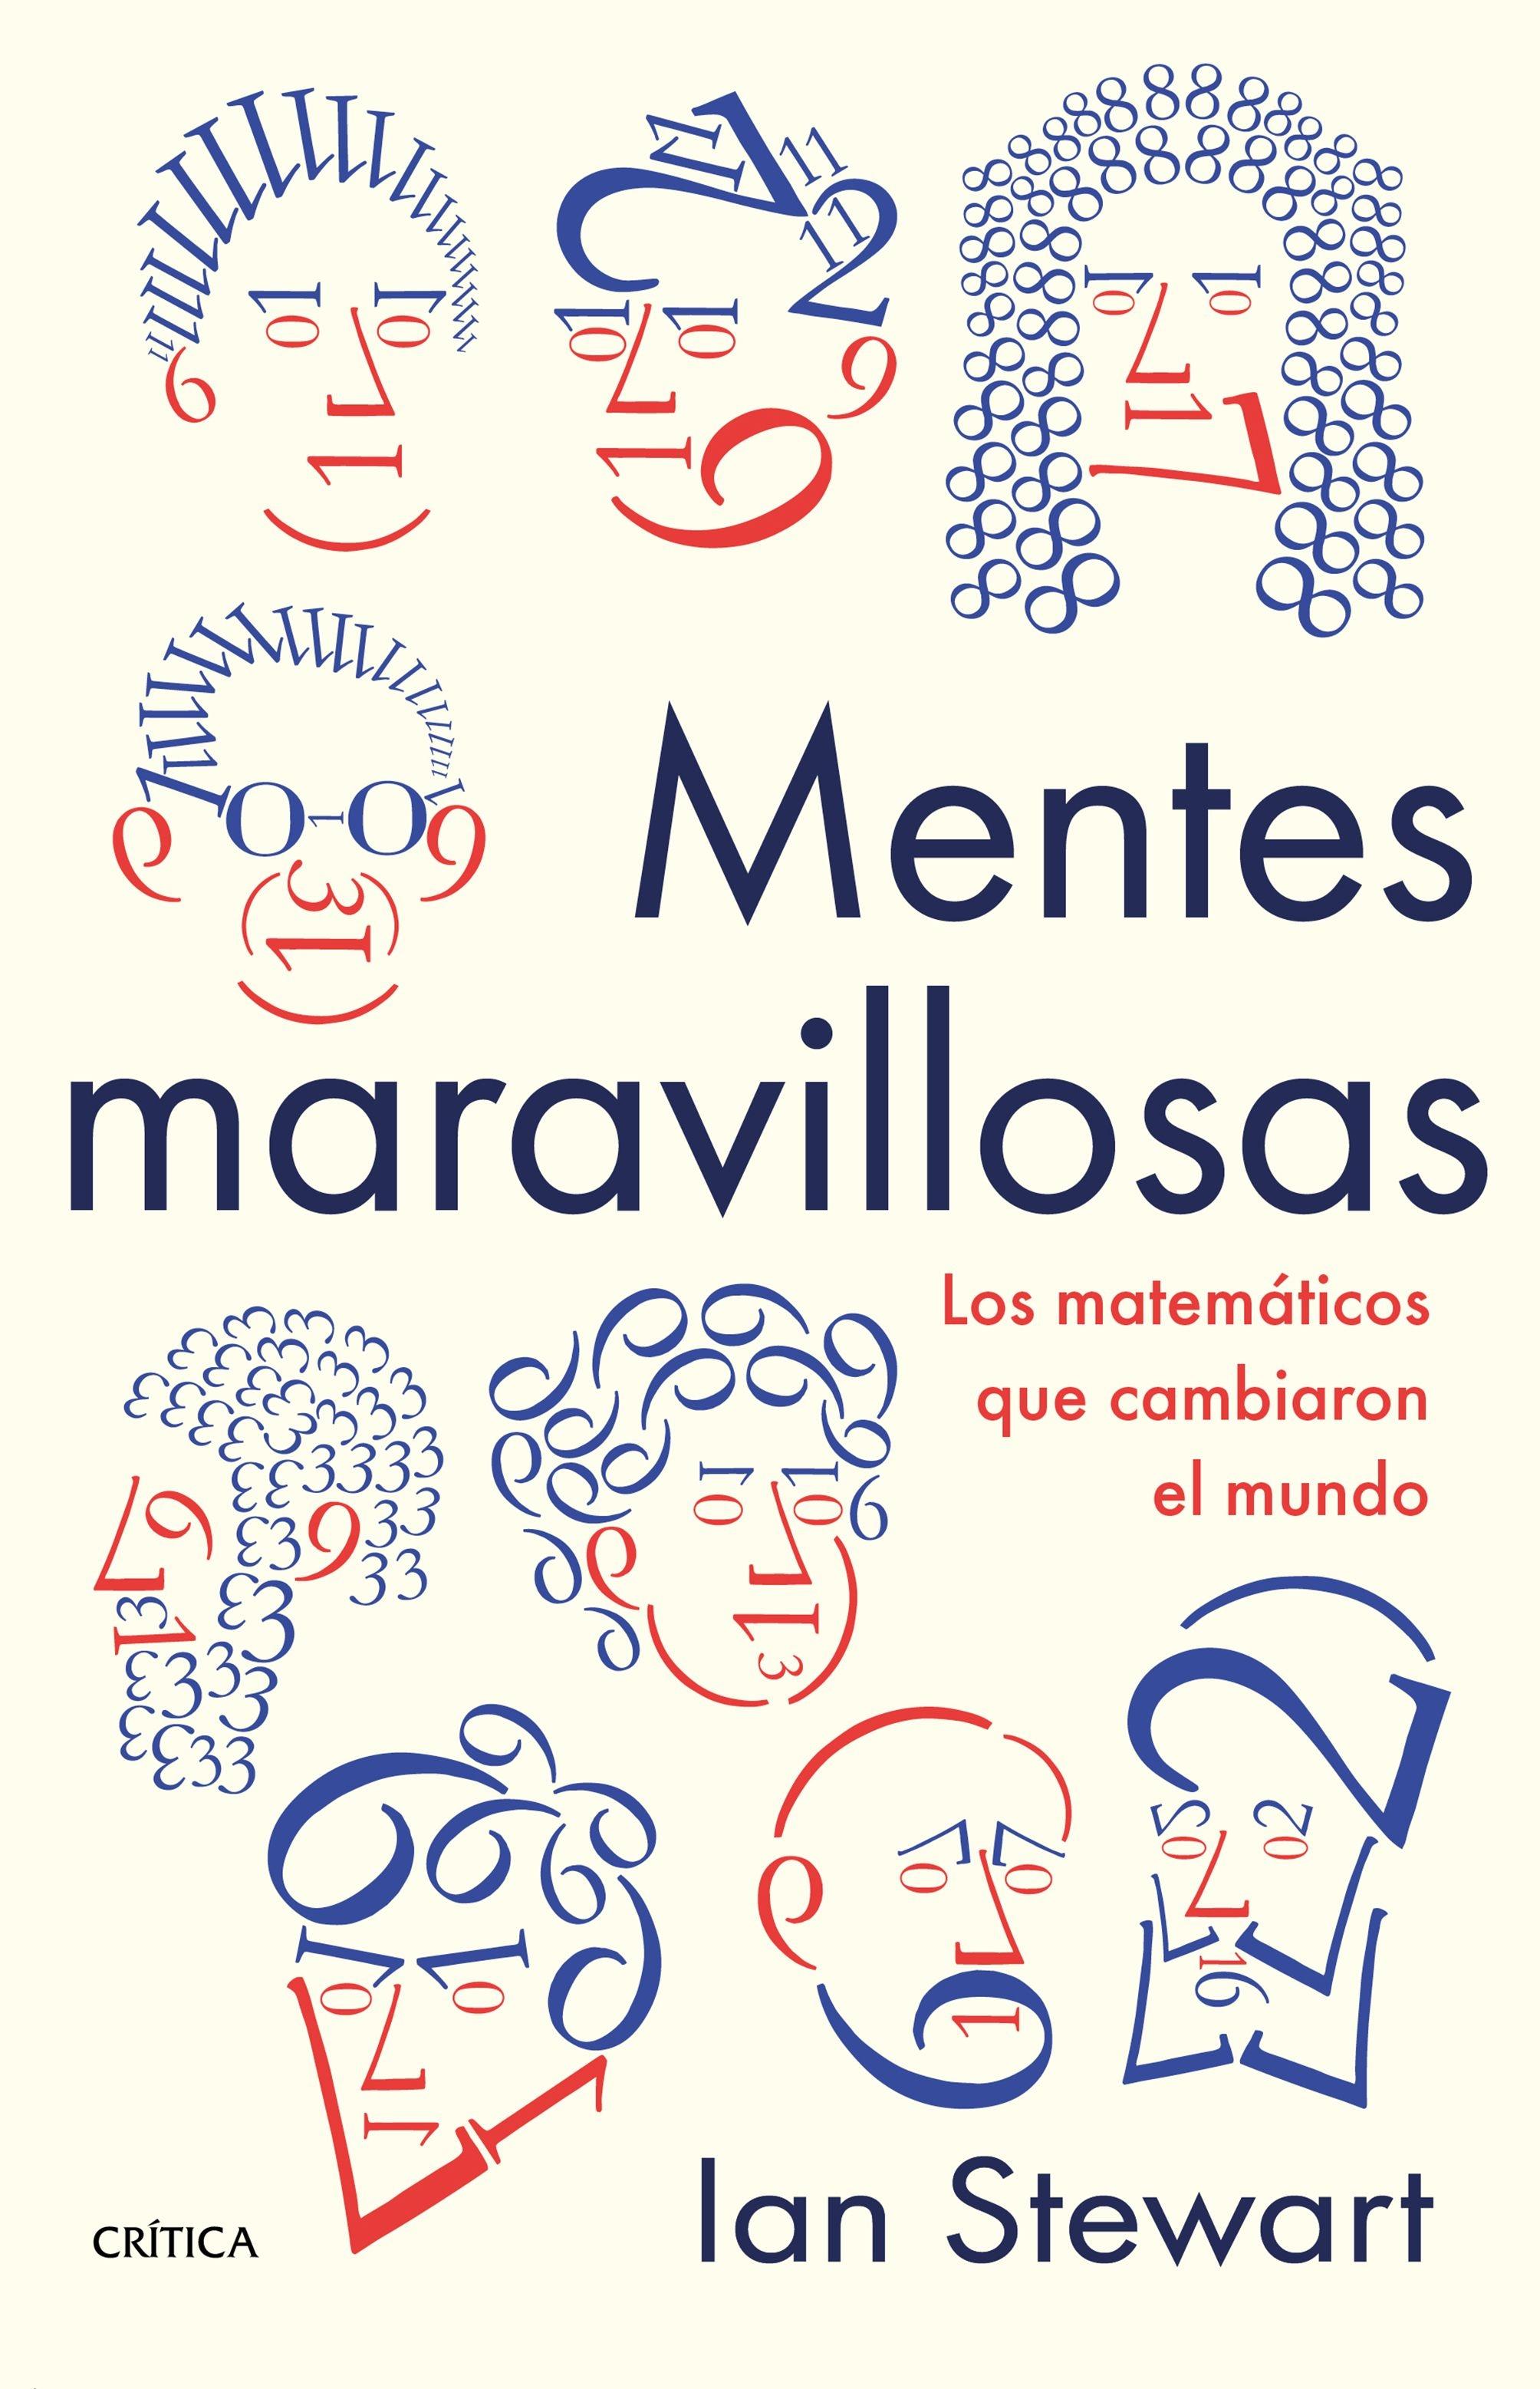 MENTES MARAVILLOSAS "Los matemáticos que cambiaron el mundo"